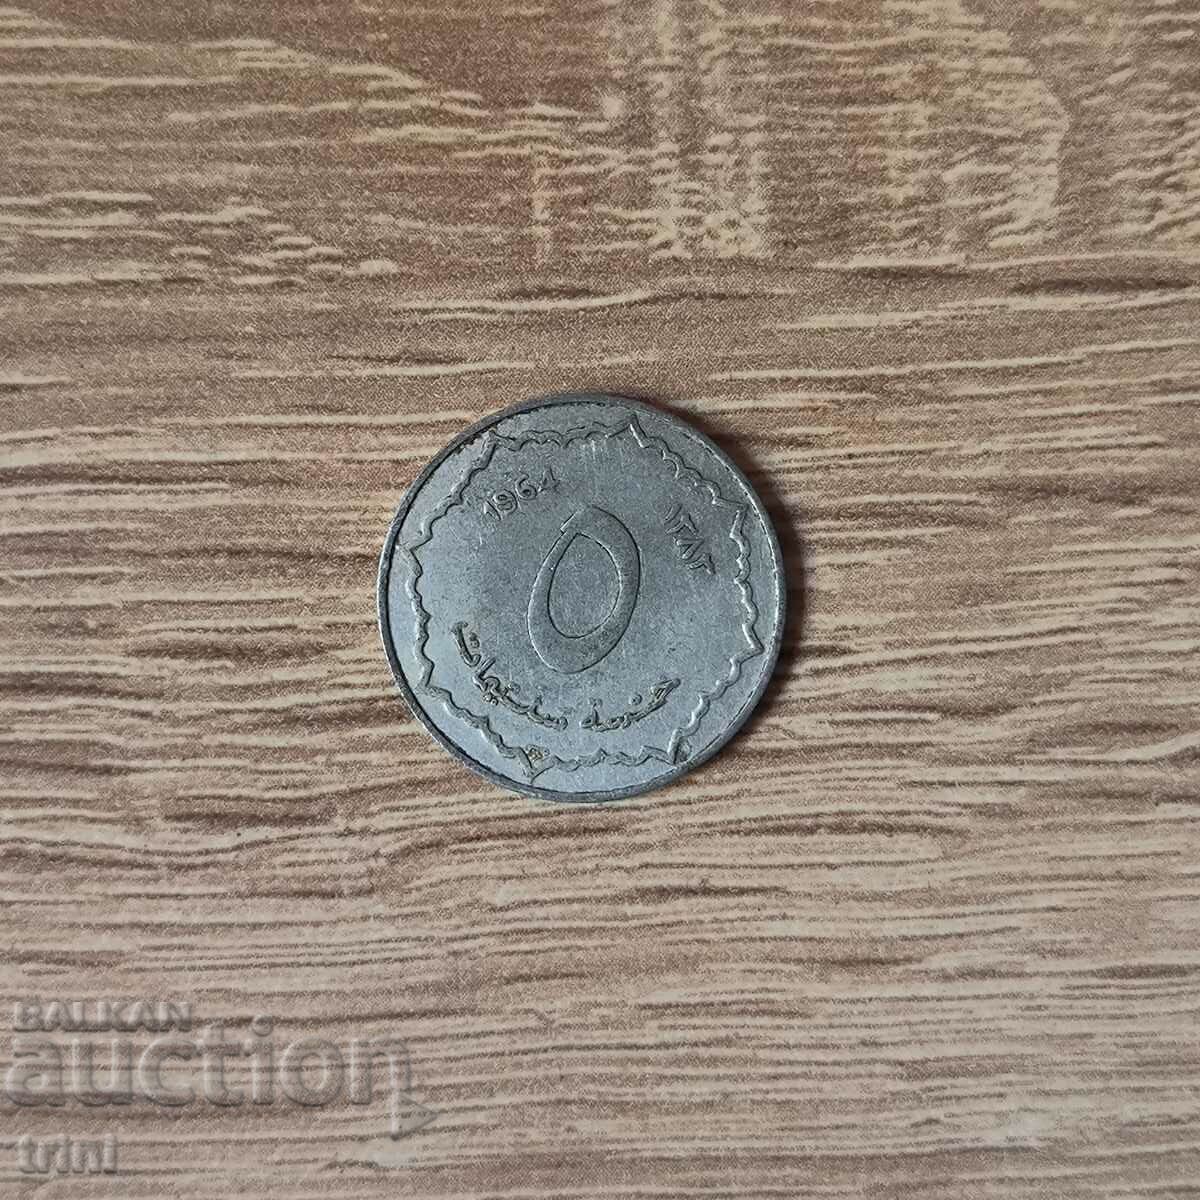 Algeria 5 centimetri 1964